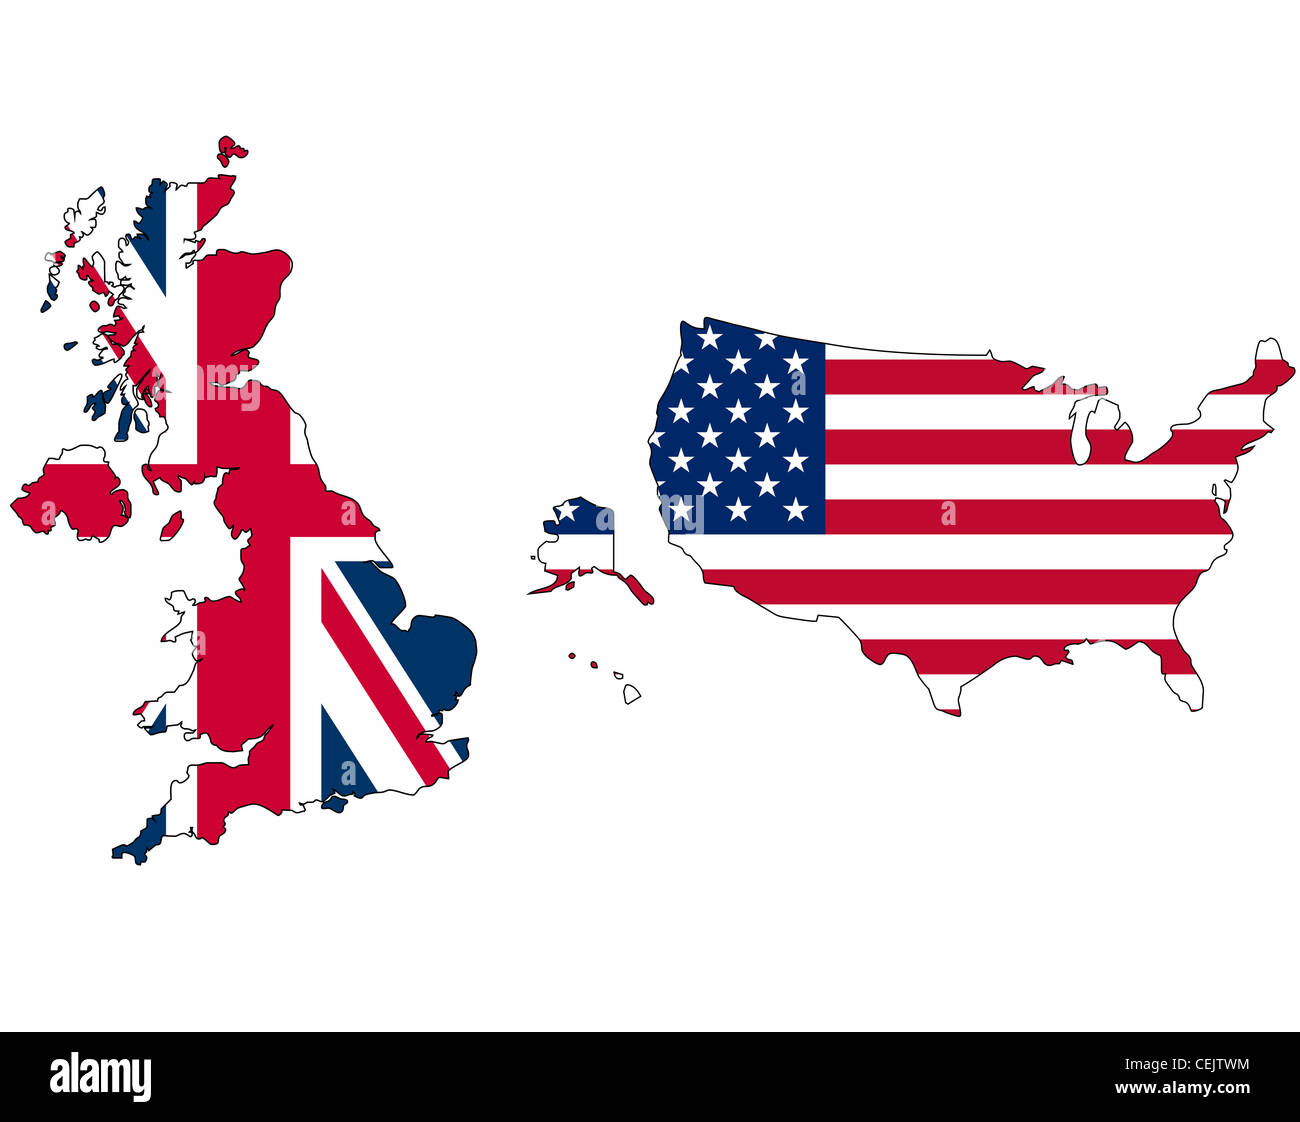 UK And USA Union Jack Flag Inside Map Stock Photo Alamy